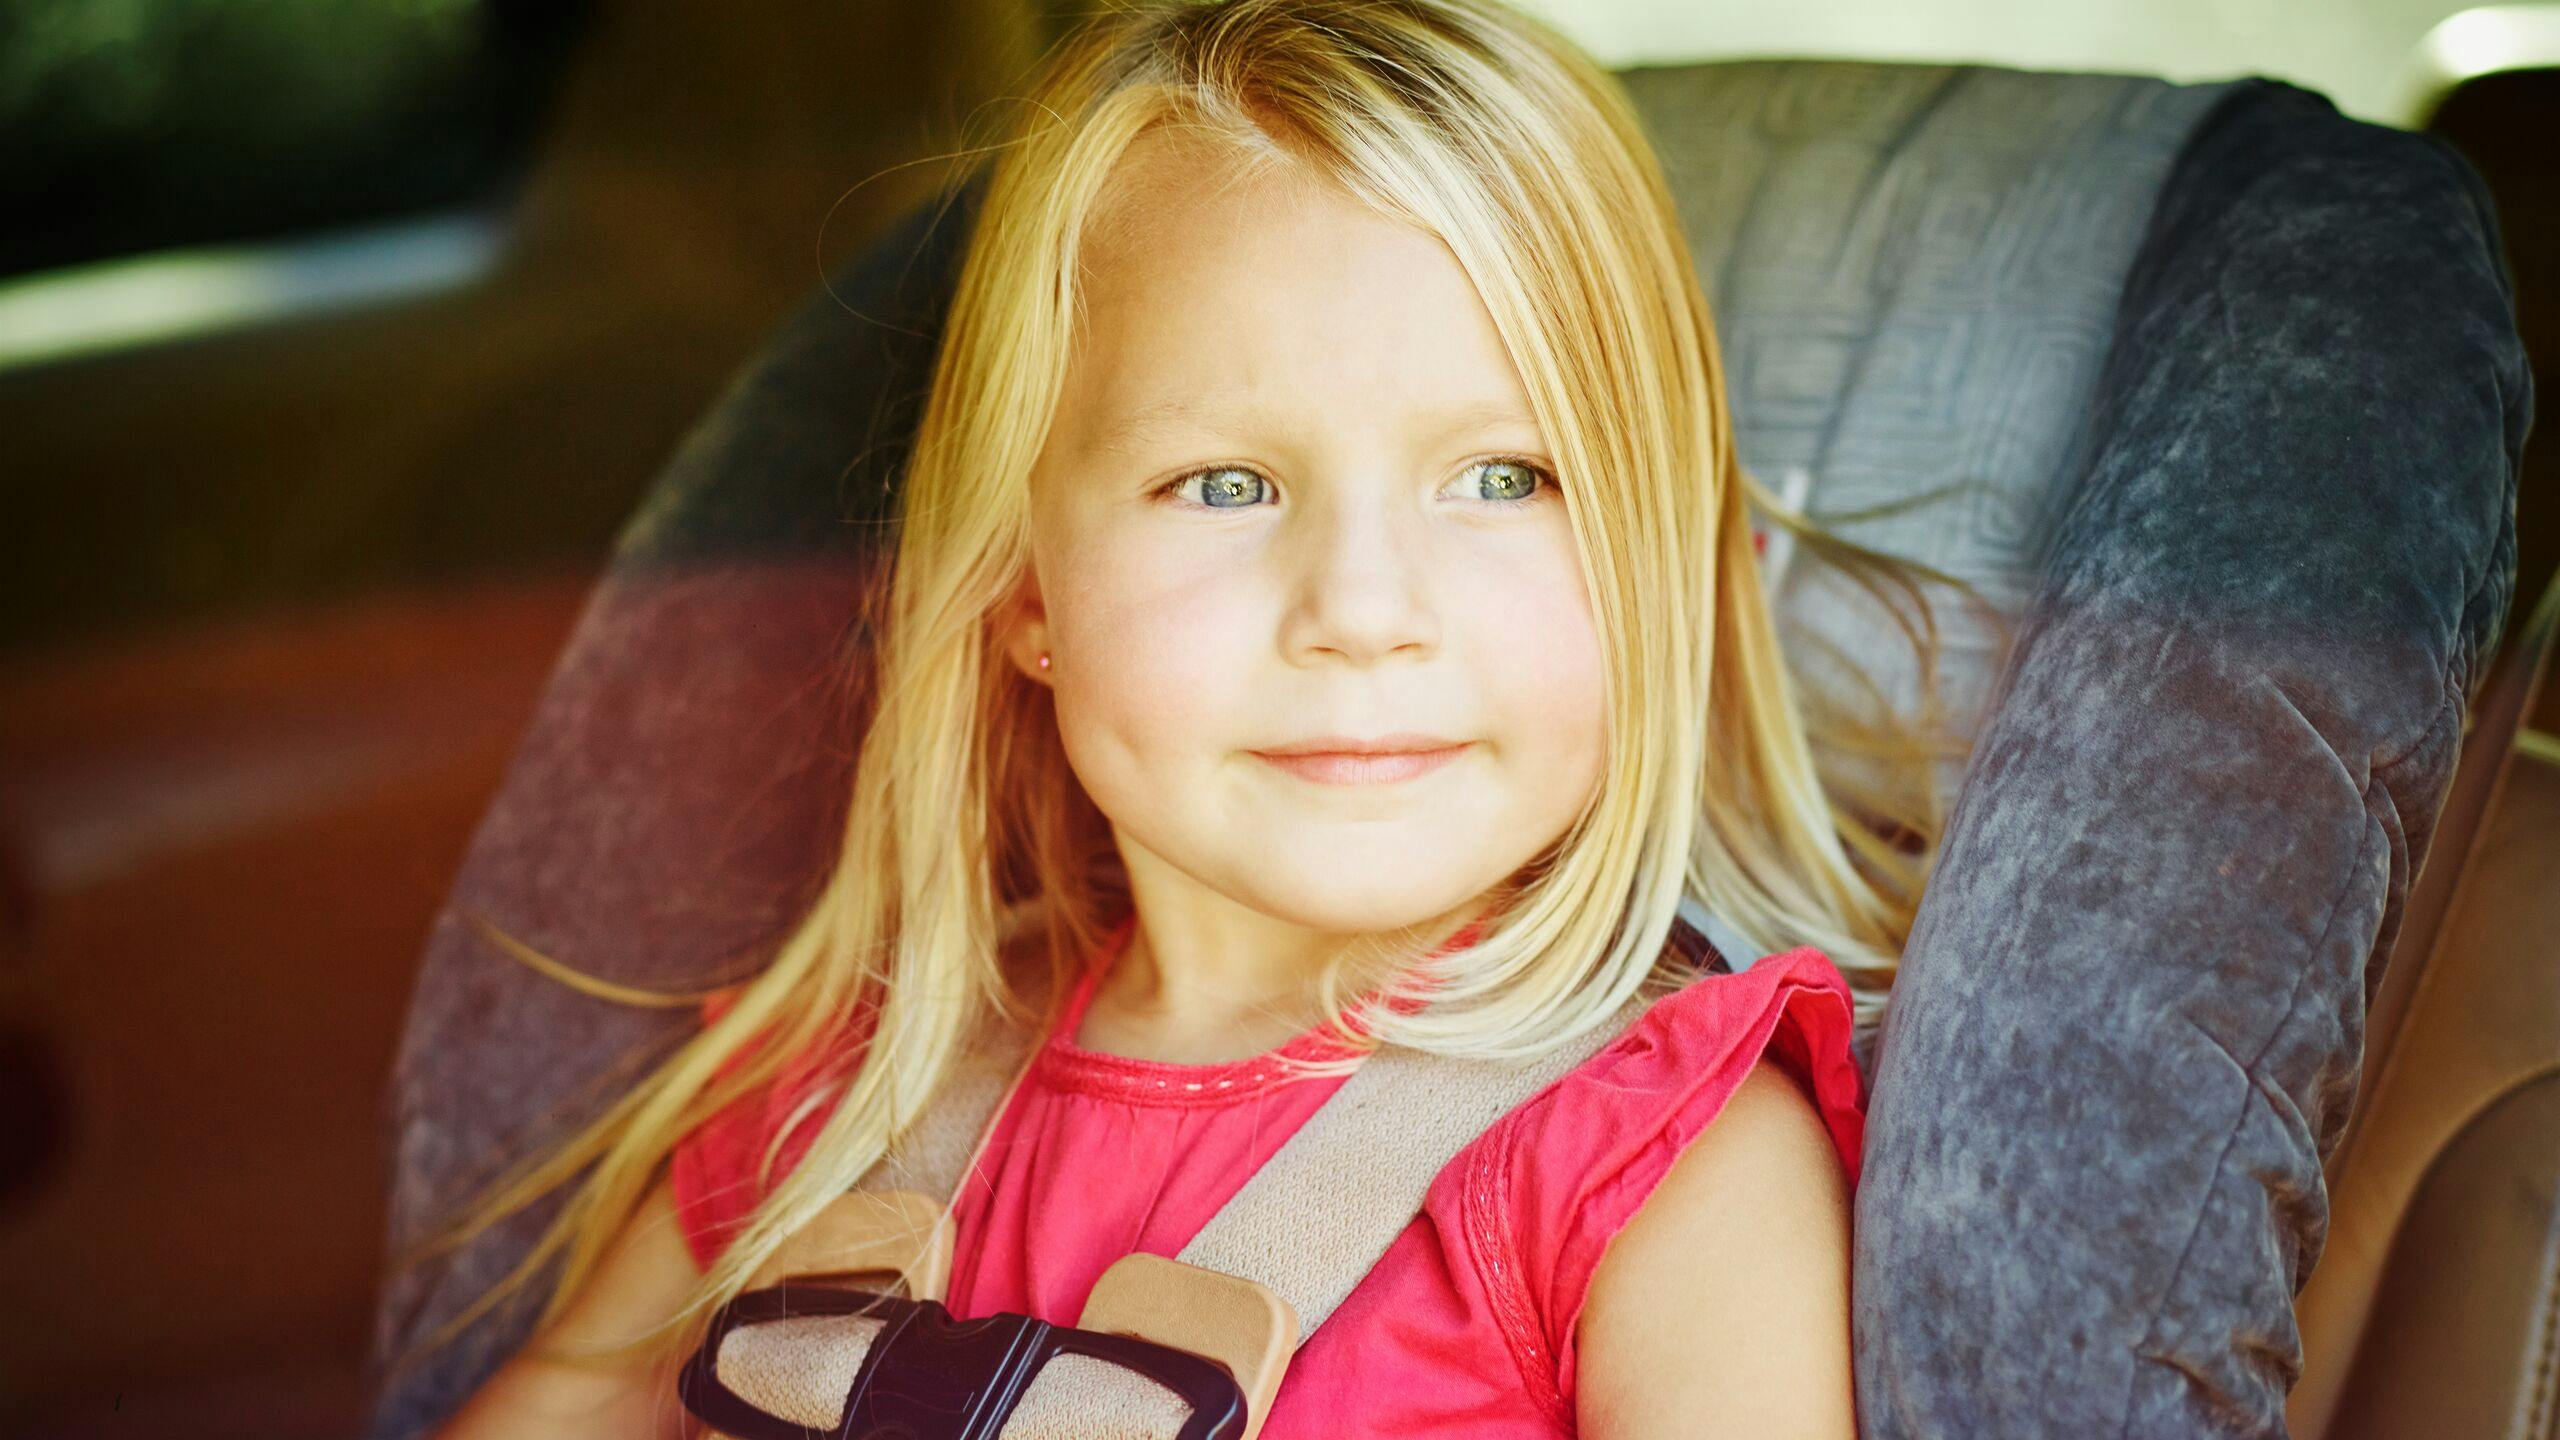 AXA Luxembourg - que dit la loi dans les pays voisins concernant les sièges auto enfant ?